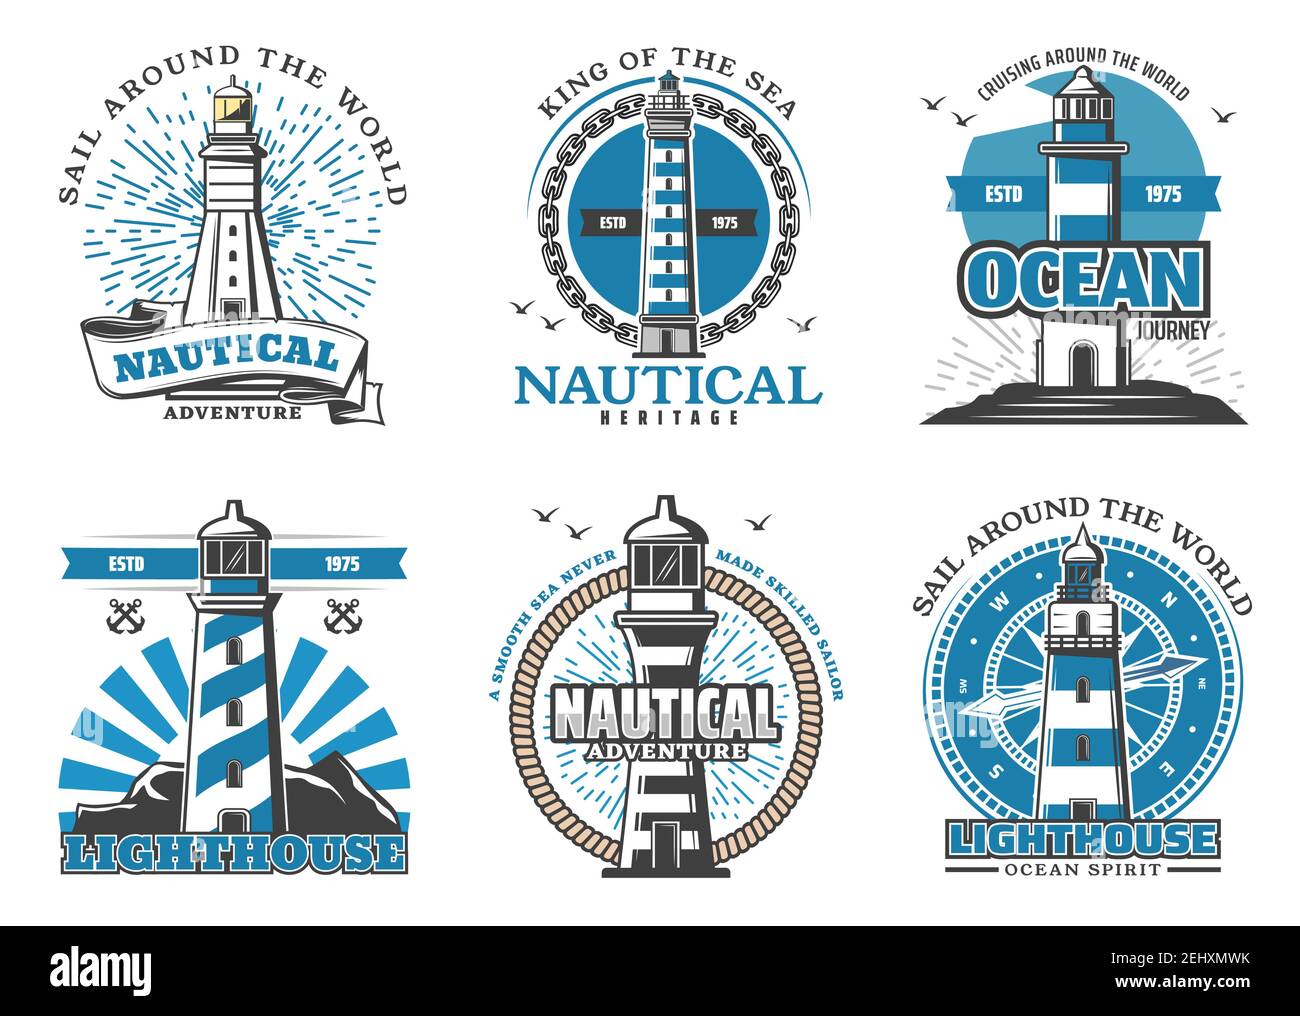 Navigation maritime et sécurité en mer icônes avec phares. Balise en forme de badge de tour rayé pour naviguer dans le monde entier. Navigation nautique et adve Illustration de Vecteur